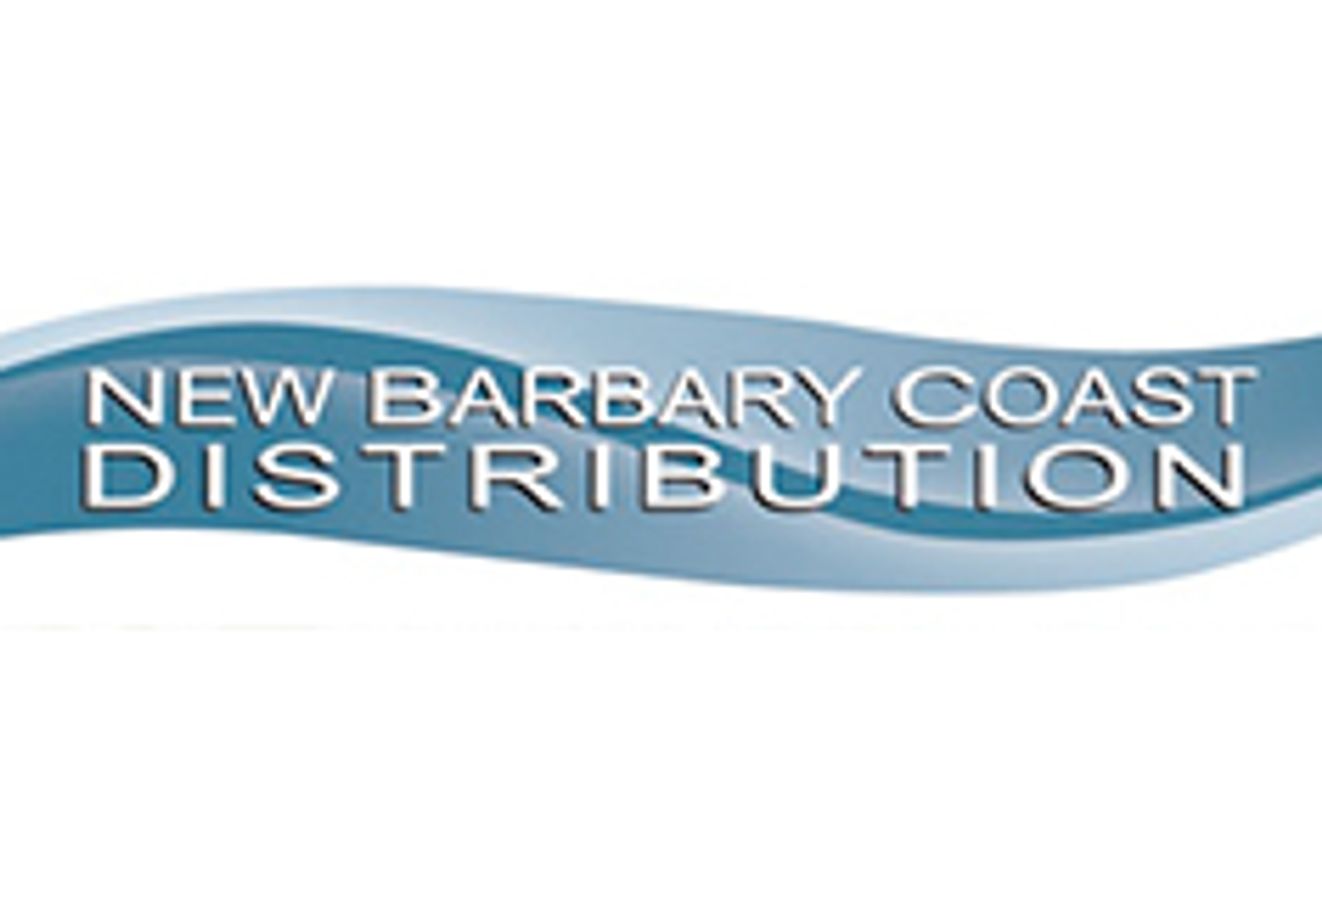 New Barbary Coast Distribution